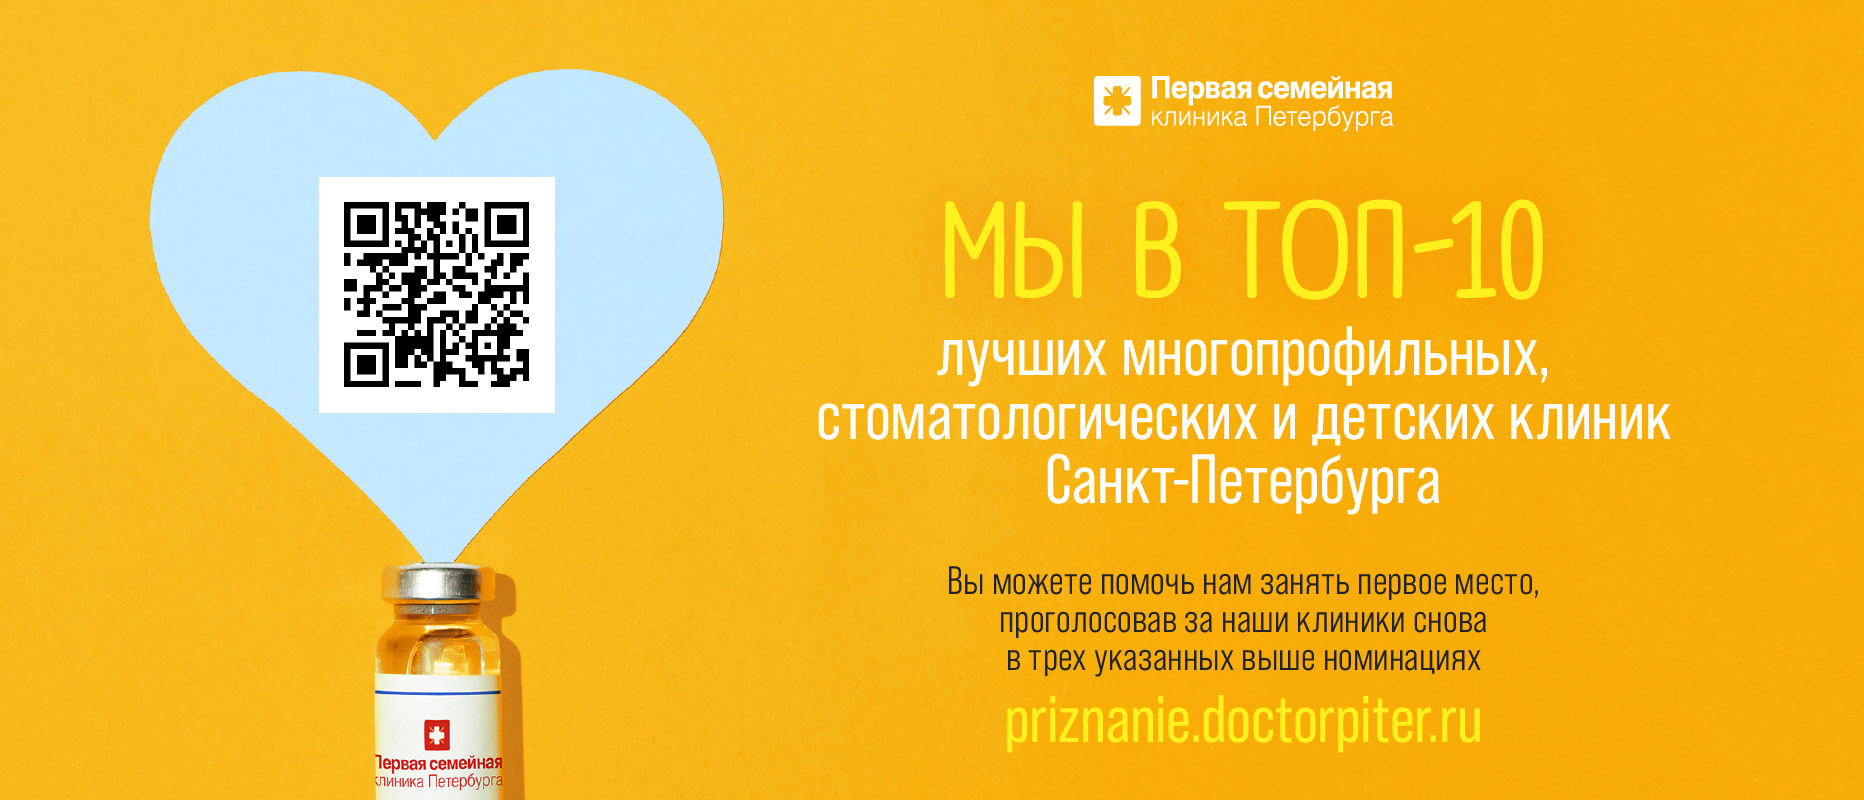 Первая семейная клиника Петербурга вошла в ТОП-10 лучших клиник Санкт-Петербурга!